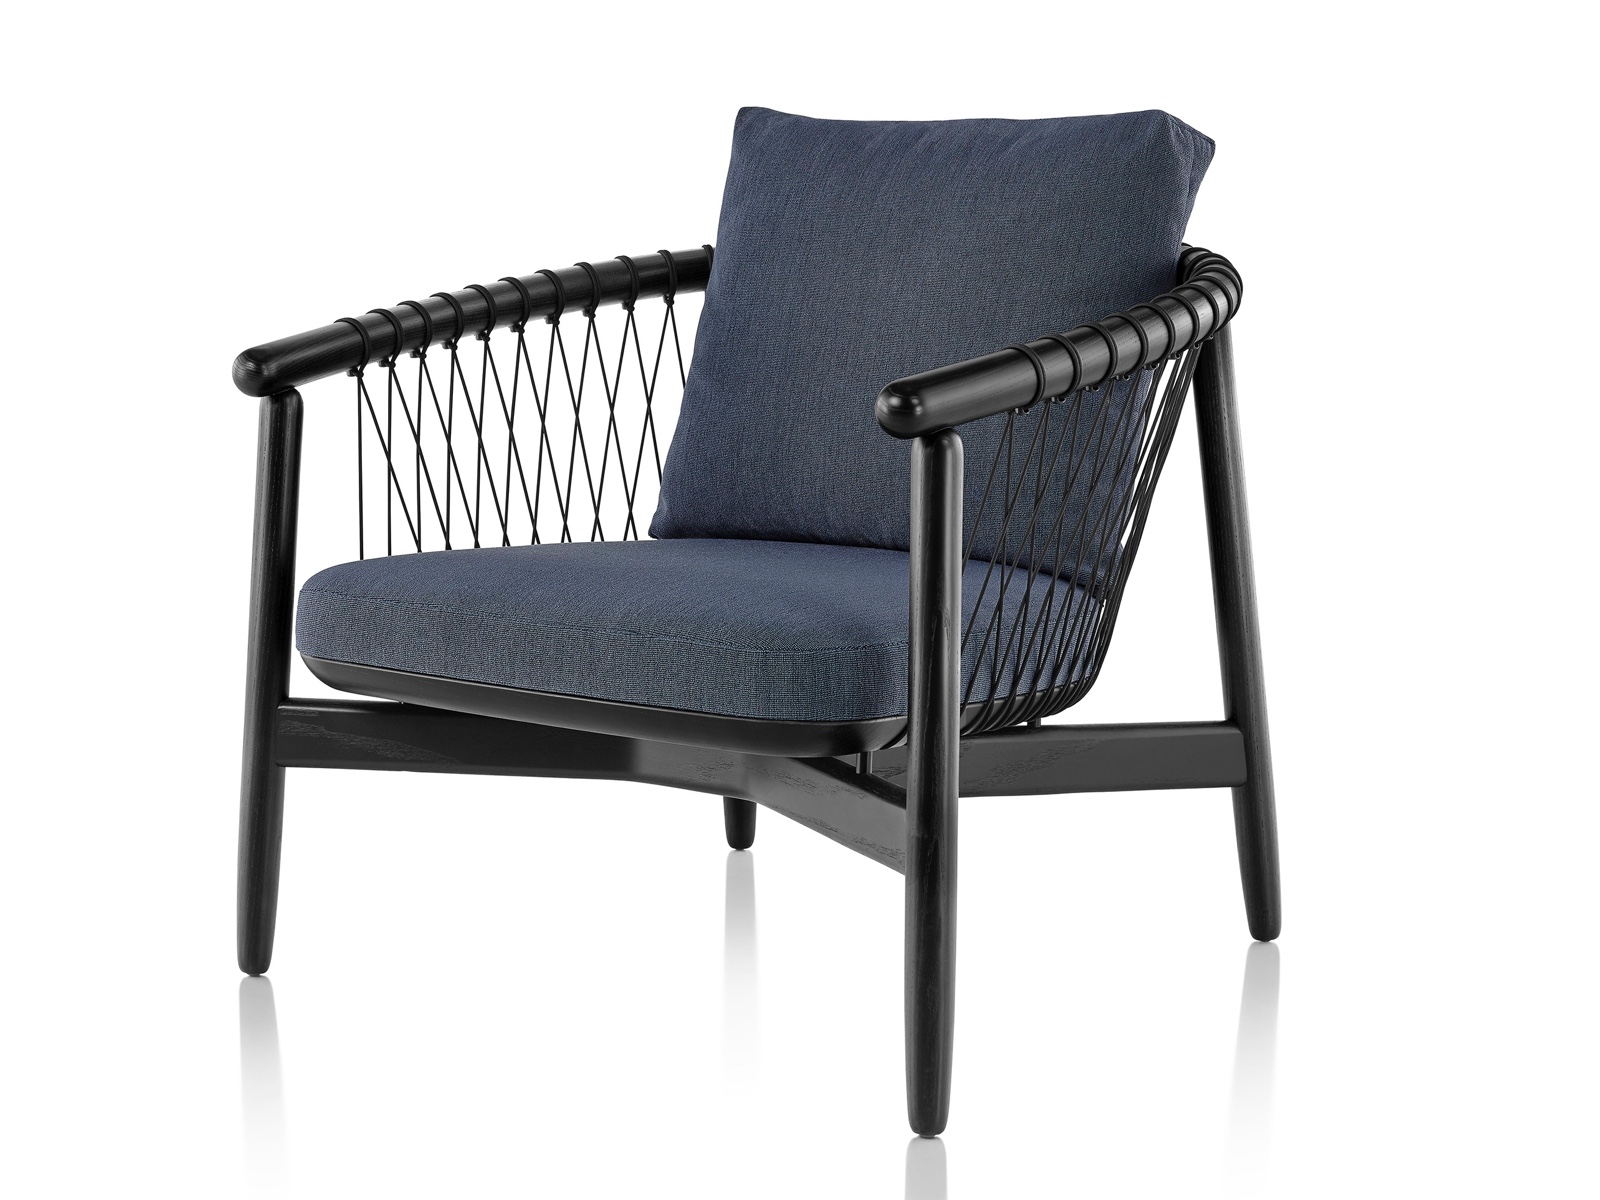 Marineblauwe gestoffeerde Crosshatch-stoel met zwart houten frame, vanaf de voorkant gezien in een hoek.